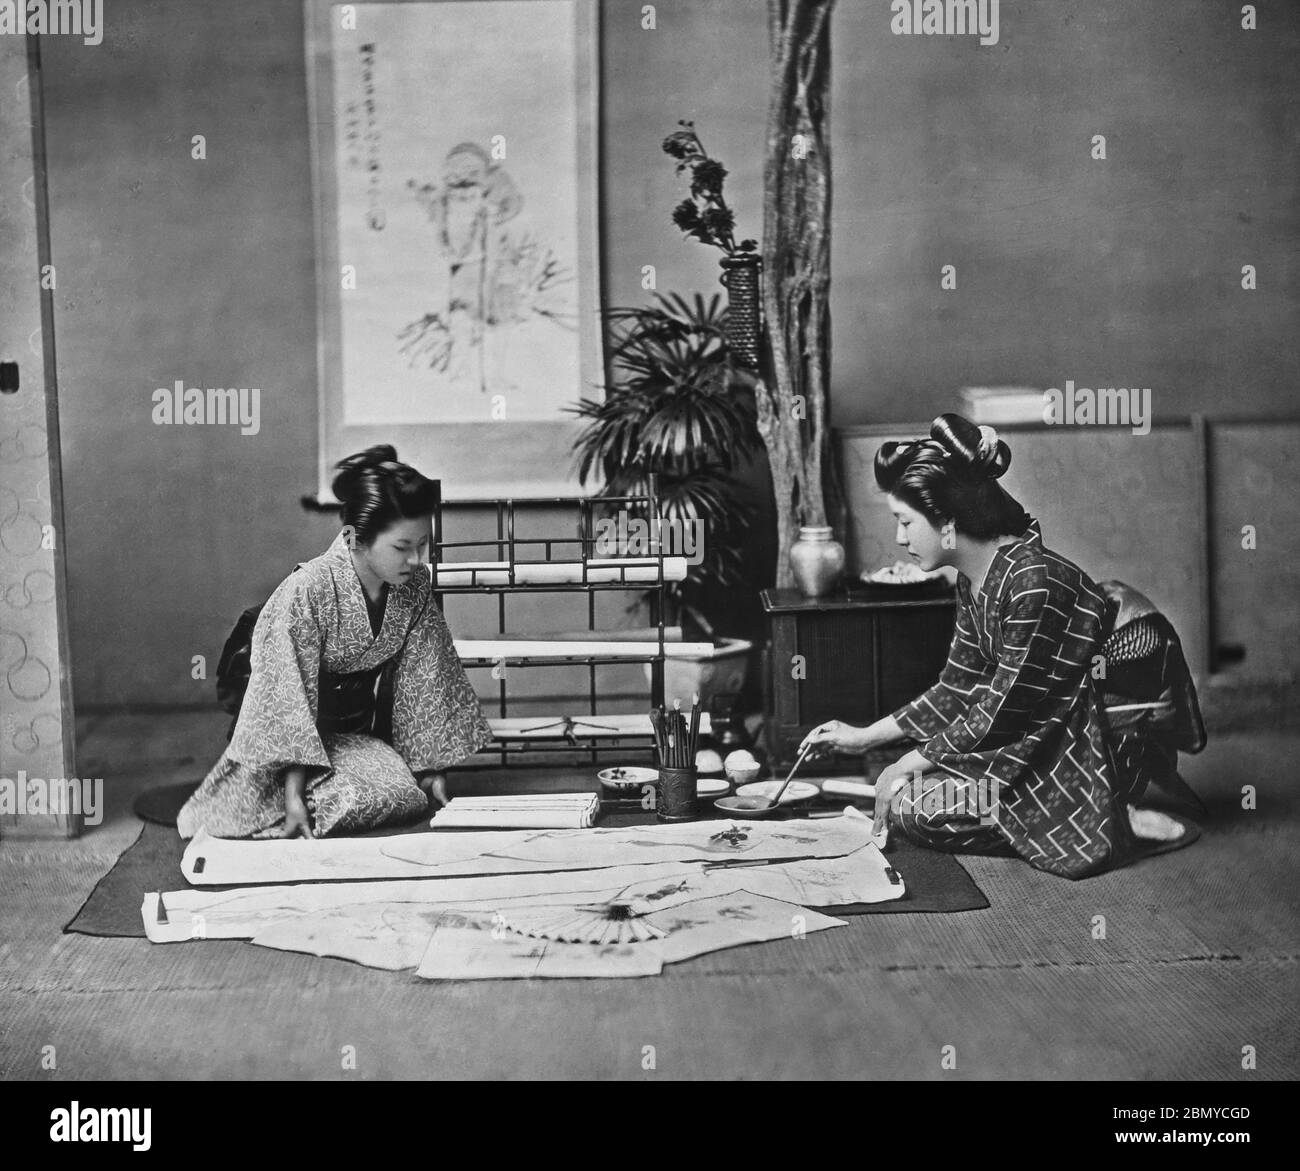 [ 1890 Giappone - Calligraphy Giapponese ] - Donna in kimono pittura su un kakemono (掛物), un rotolo appeso . Kakemono è usato per esporre e esporre dipinti e calligrafia. Sono solitamente montati su un supporto flessibile con bordi in tessuto di seta, in modo da poter essere arrotolati per l'immagazzinamento. Da una serie di diapositive di vetro pubblicate (ma non fotografate) dal fotografo scozzese George Washington Wilson (1823–1893). La società Wilson è stata uno dei maggiori editori di stampe fotografiche al mondo. vetrino vintage del xix secolo. Foto Stock